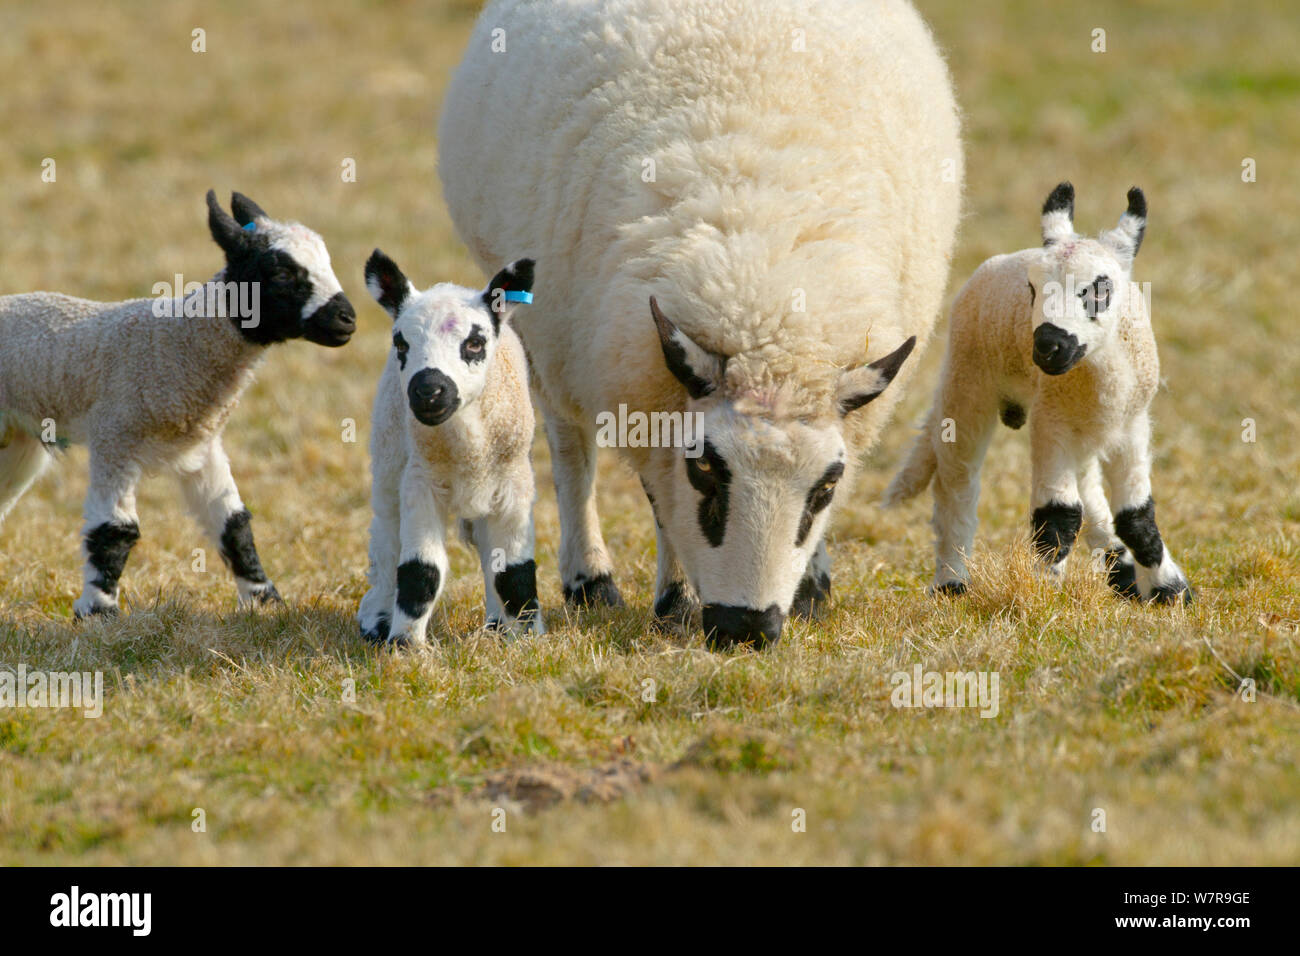 Kerry Hill ovini - Pecora che pascola con agnelli, UK, Aprile. Questa razza proviene dalla contea di Powys in Galles e prende il suo nome dalla piccola cittadina di Kerry. Foto Stock